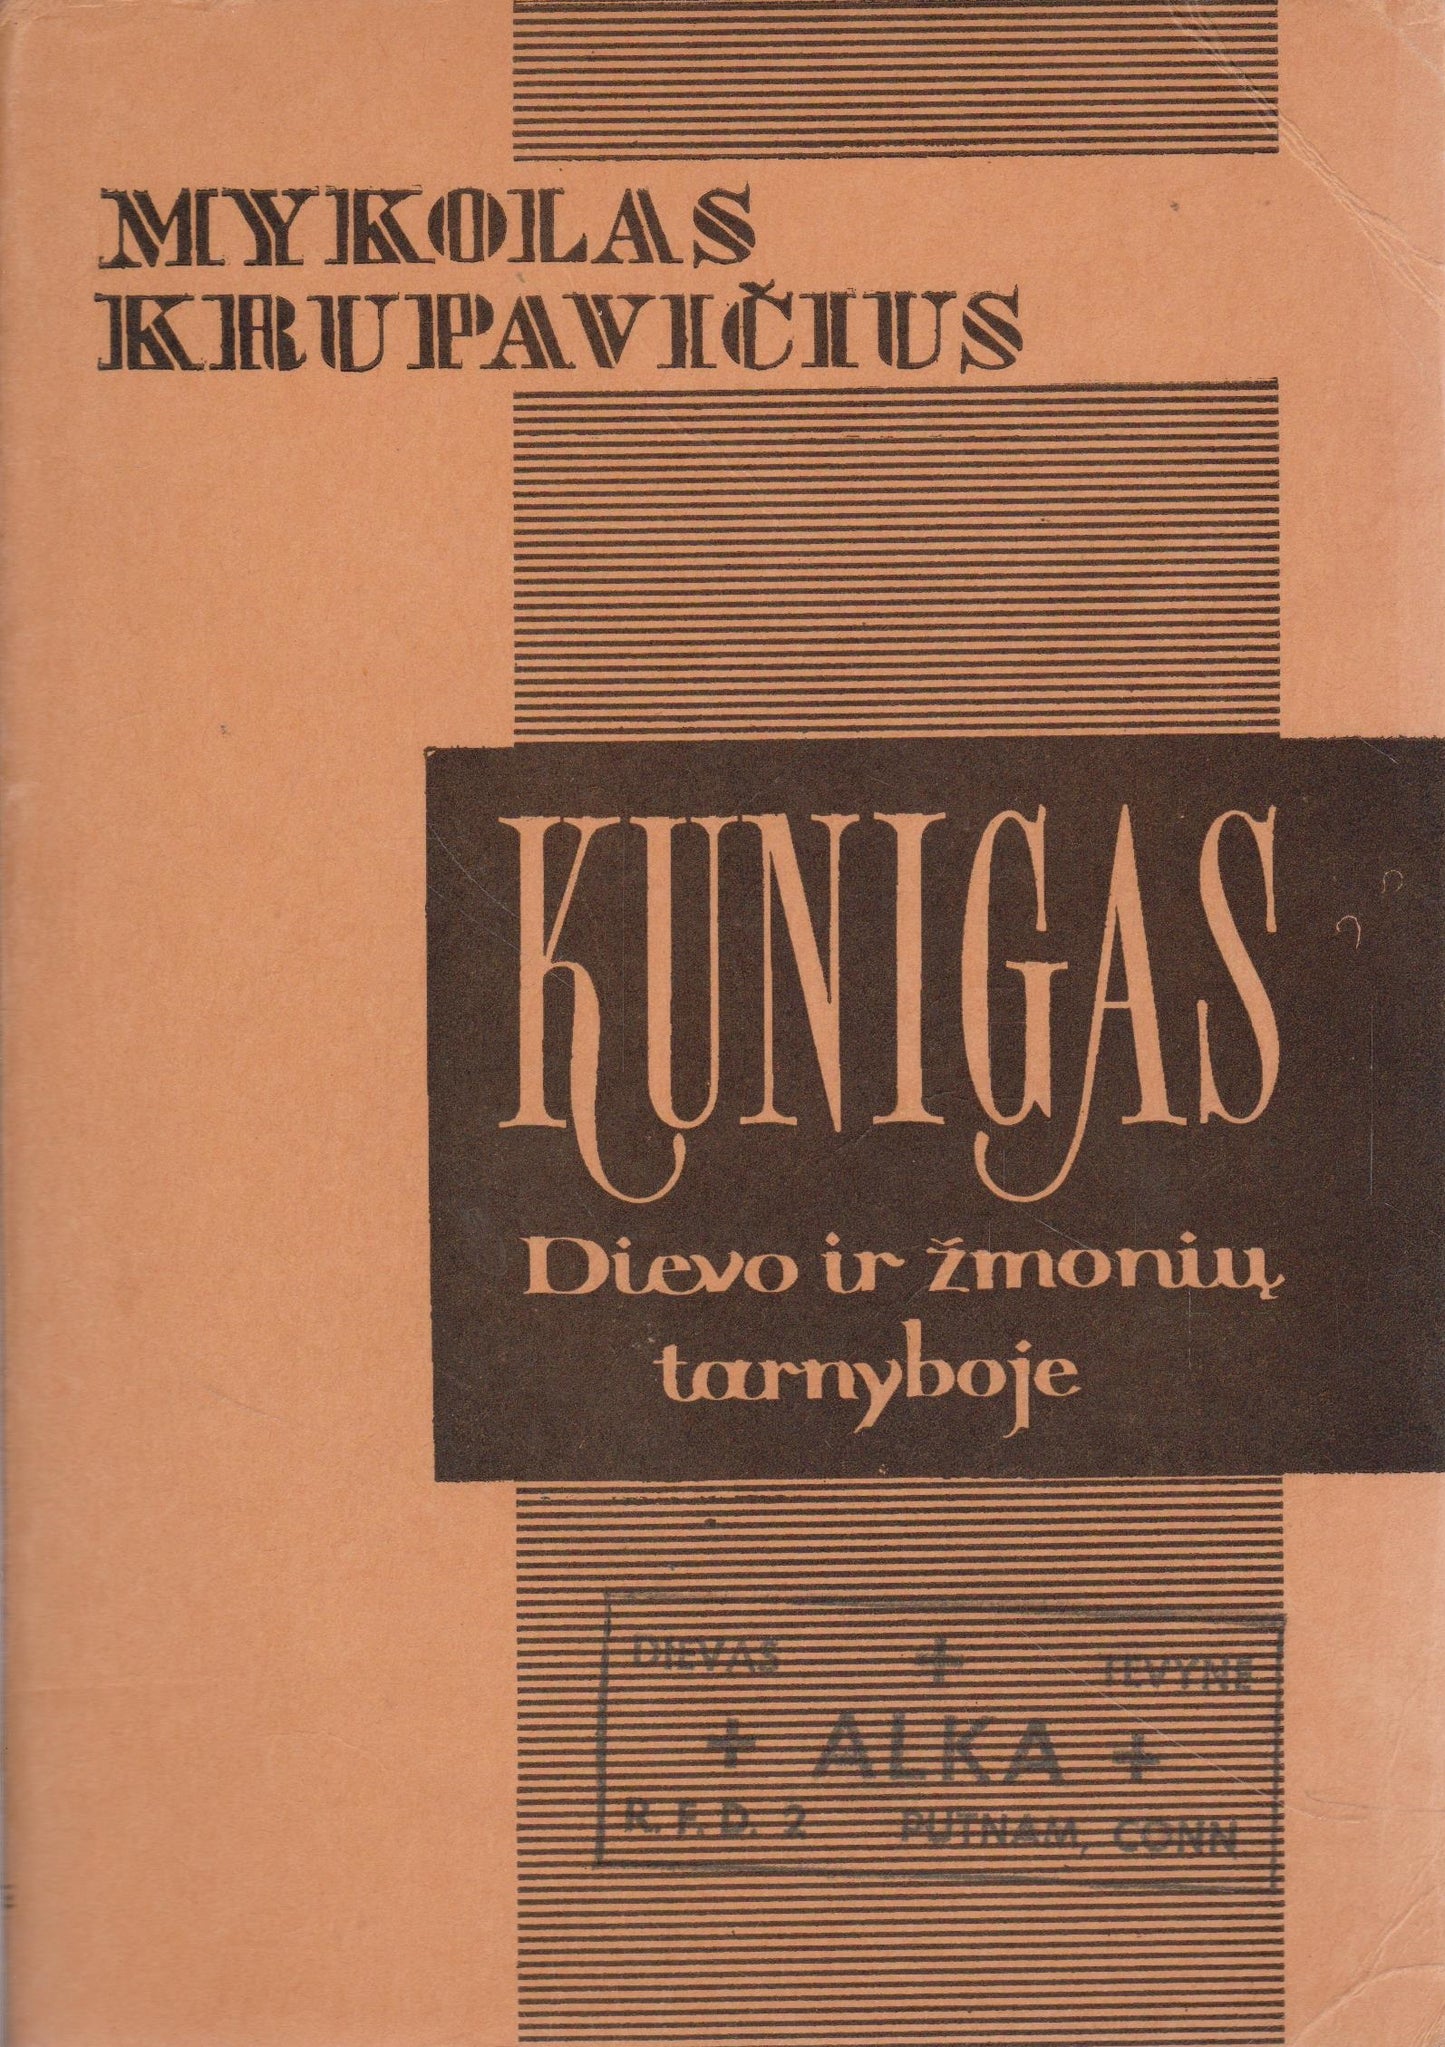 Mykolas Krupavičius - Kunigas Dievo ir žmogaus tarnyboje, 1961, Chicago